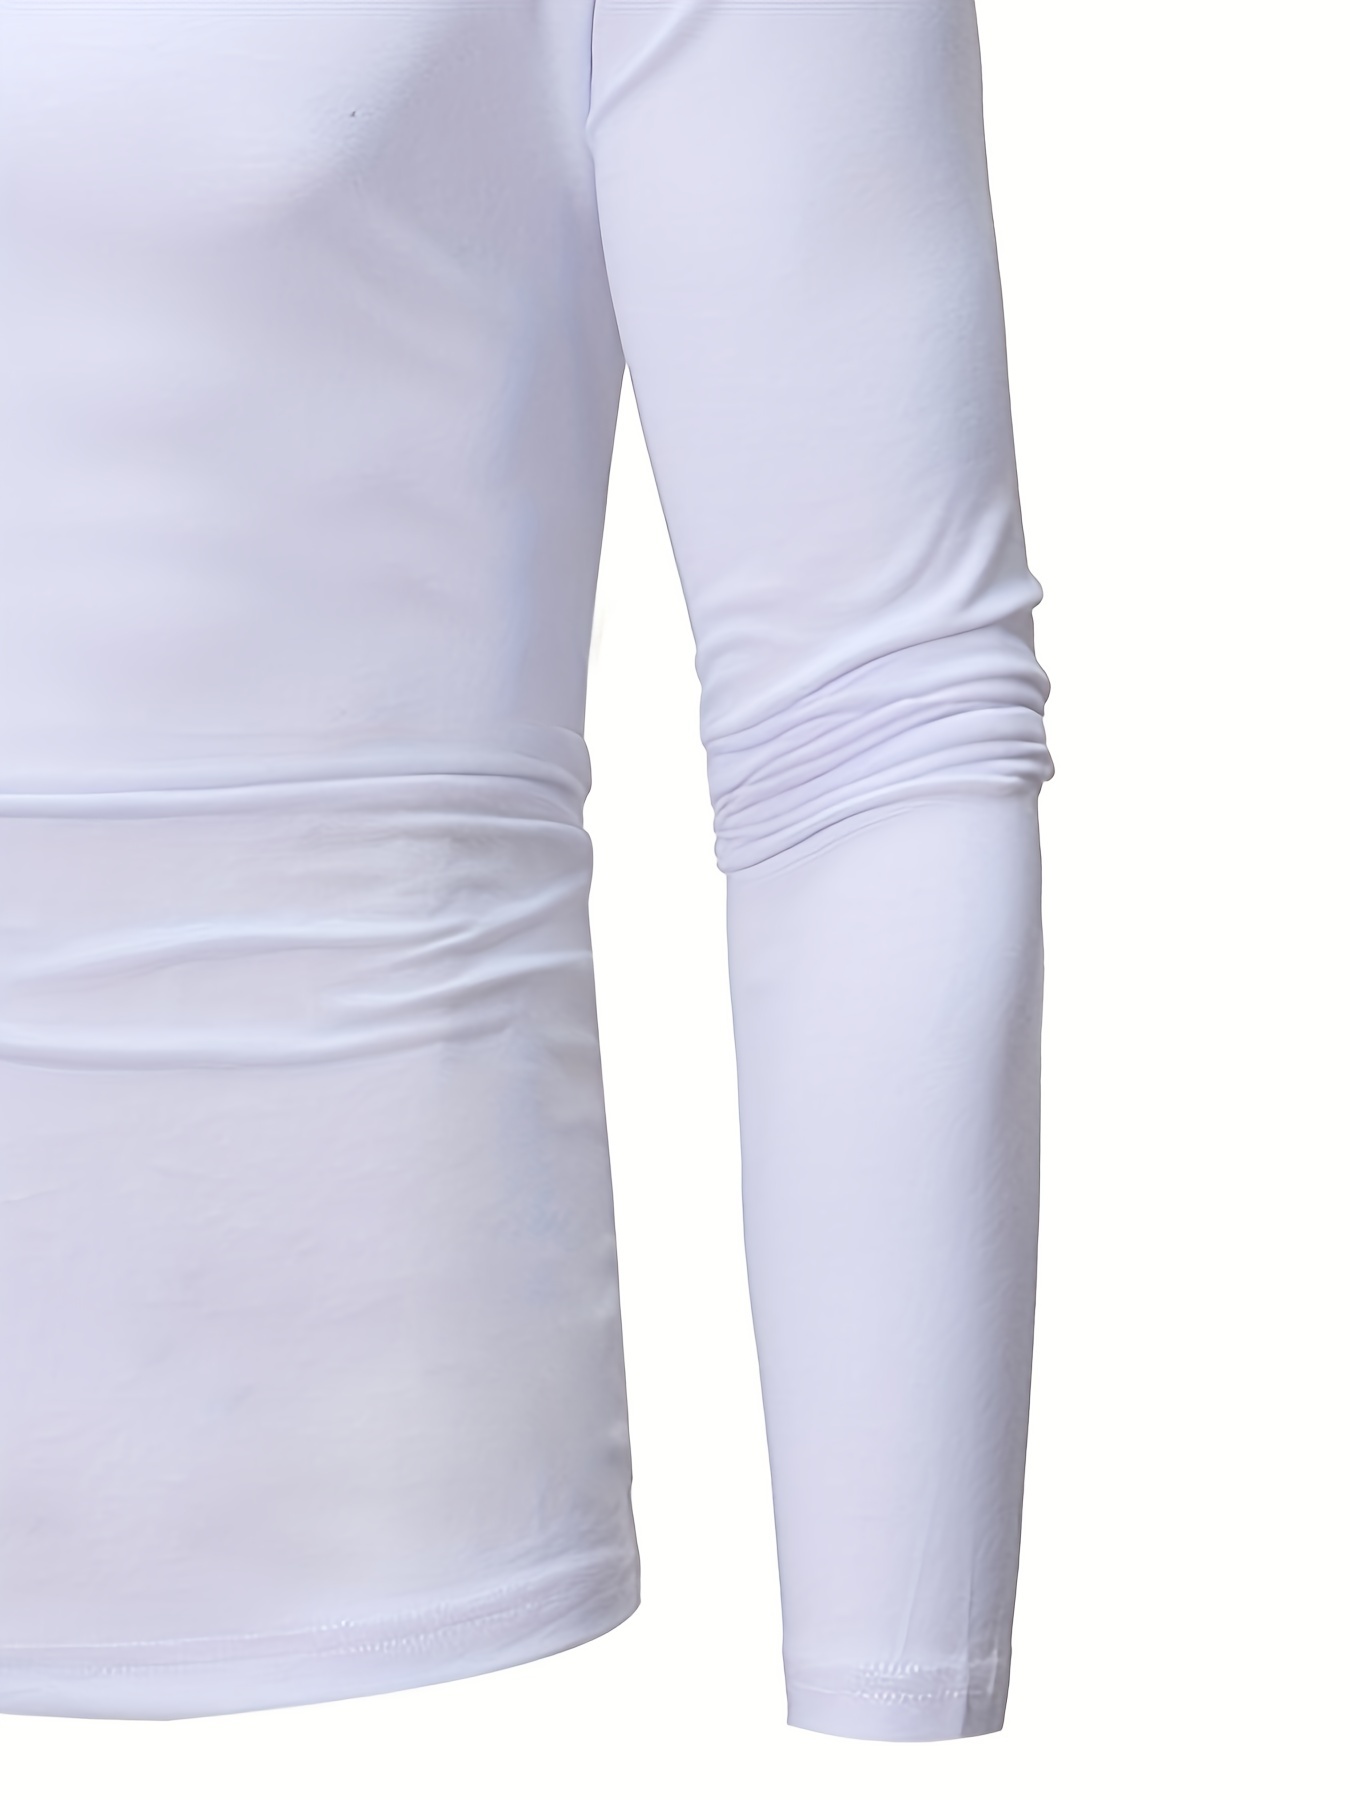 TSLA - Paquete de 1 o 2 camisetas térmicas de manga larga para mujer, de  cuello redondo o cuello alto falso, hechas de tela elástica de compresión y